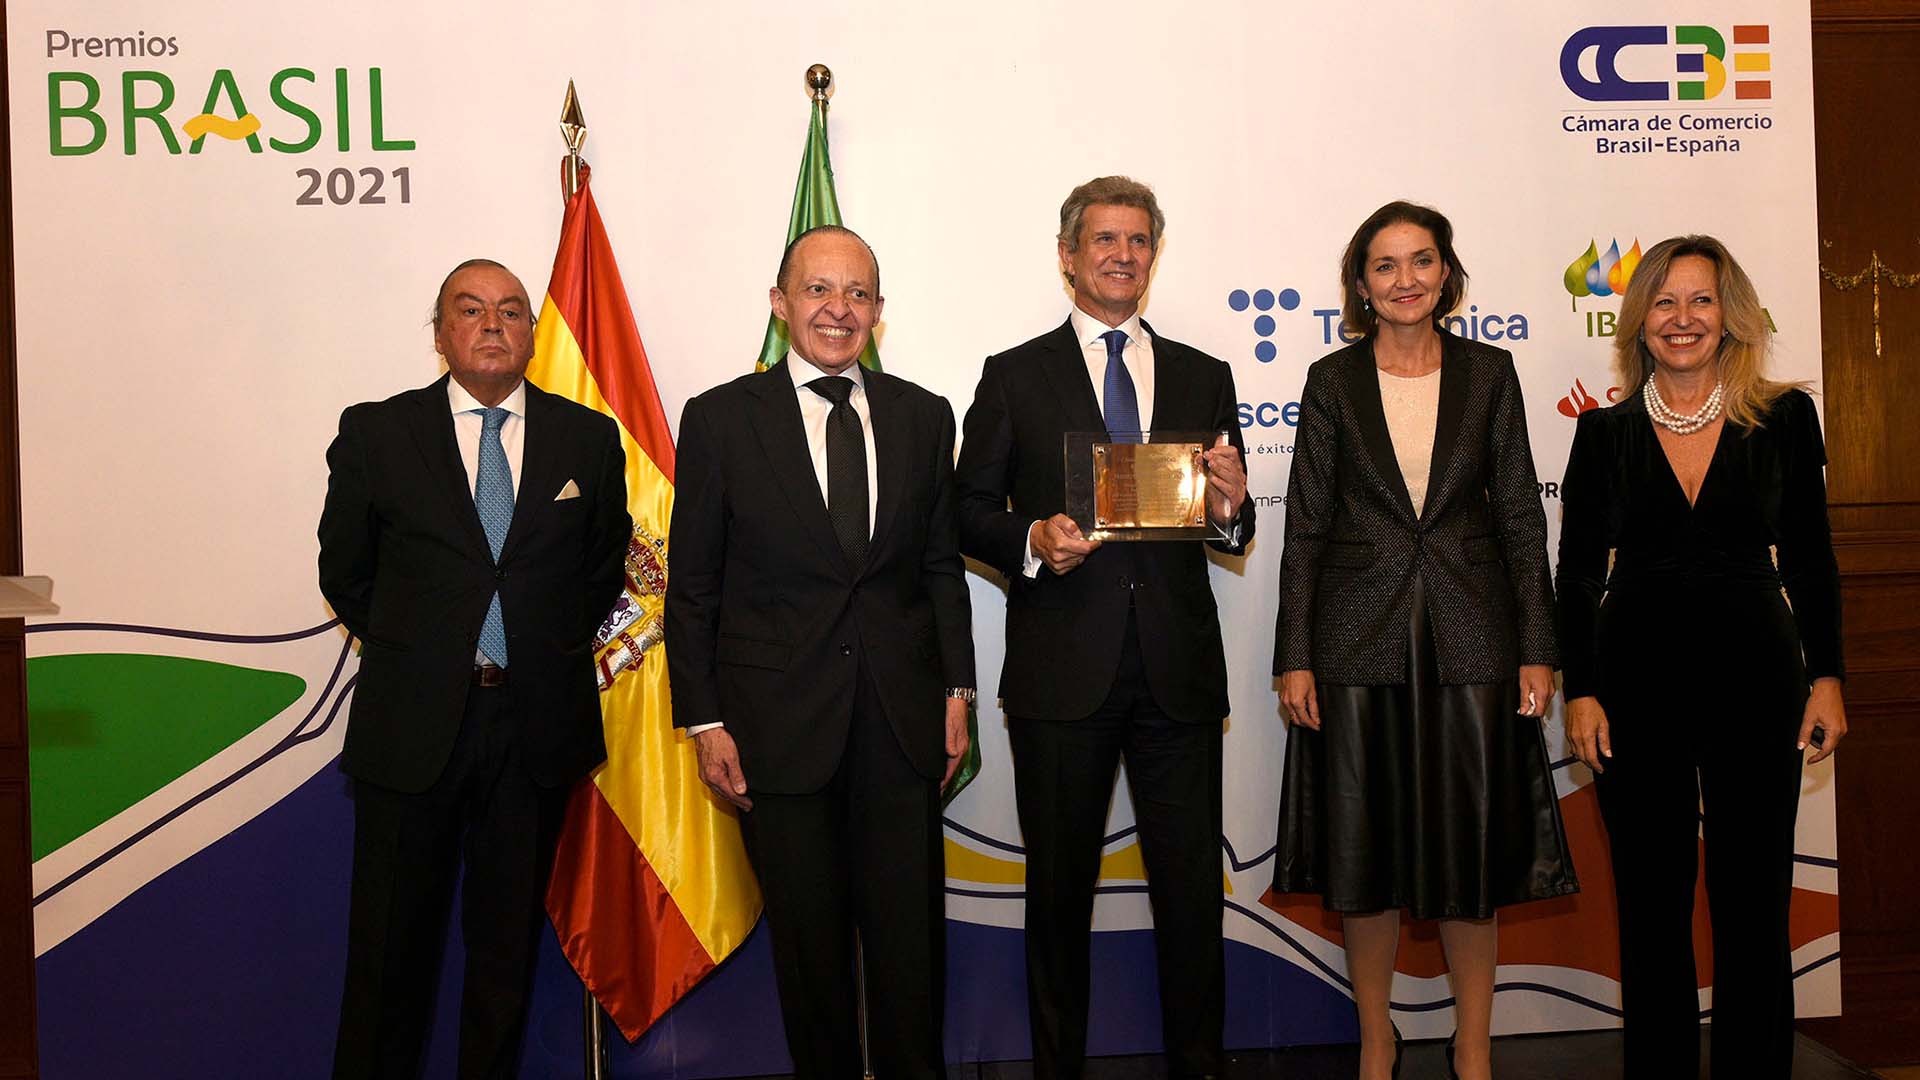 La Cámara de Comercio Brasil-España galardona a D. Francisco J. Riberas, presidente de Gestamp, como empresario del año